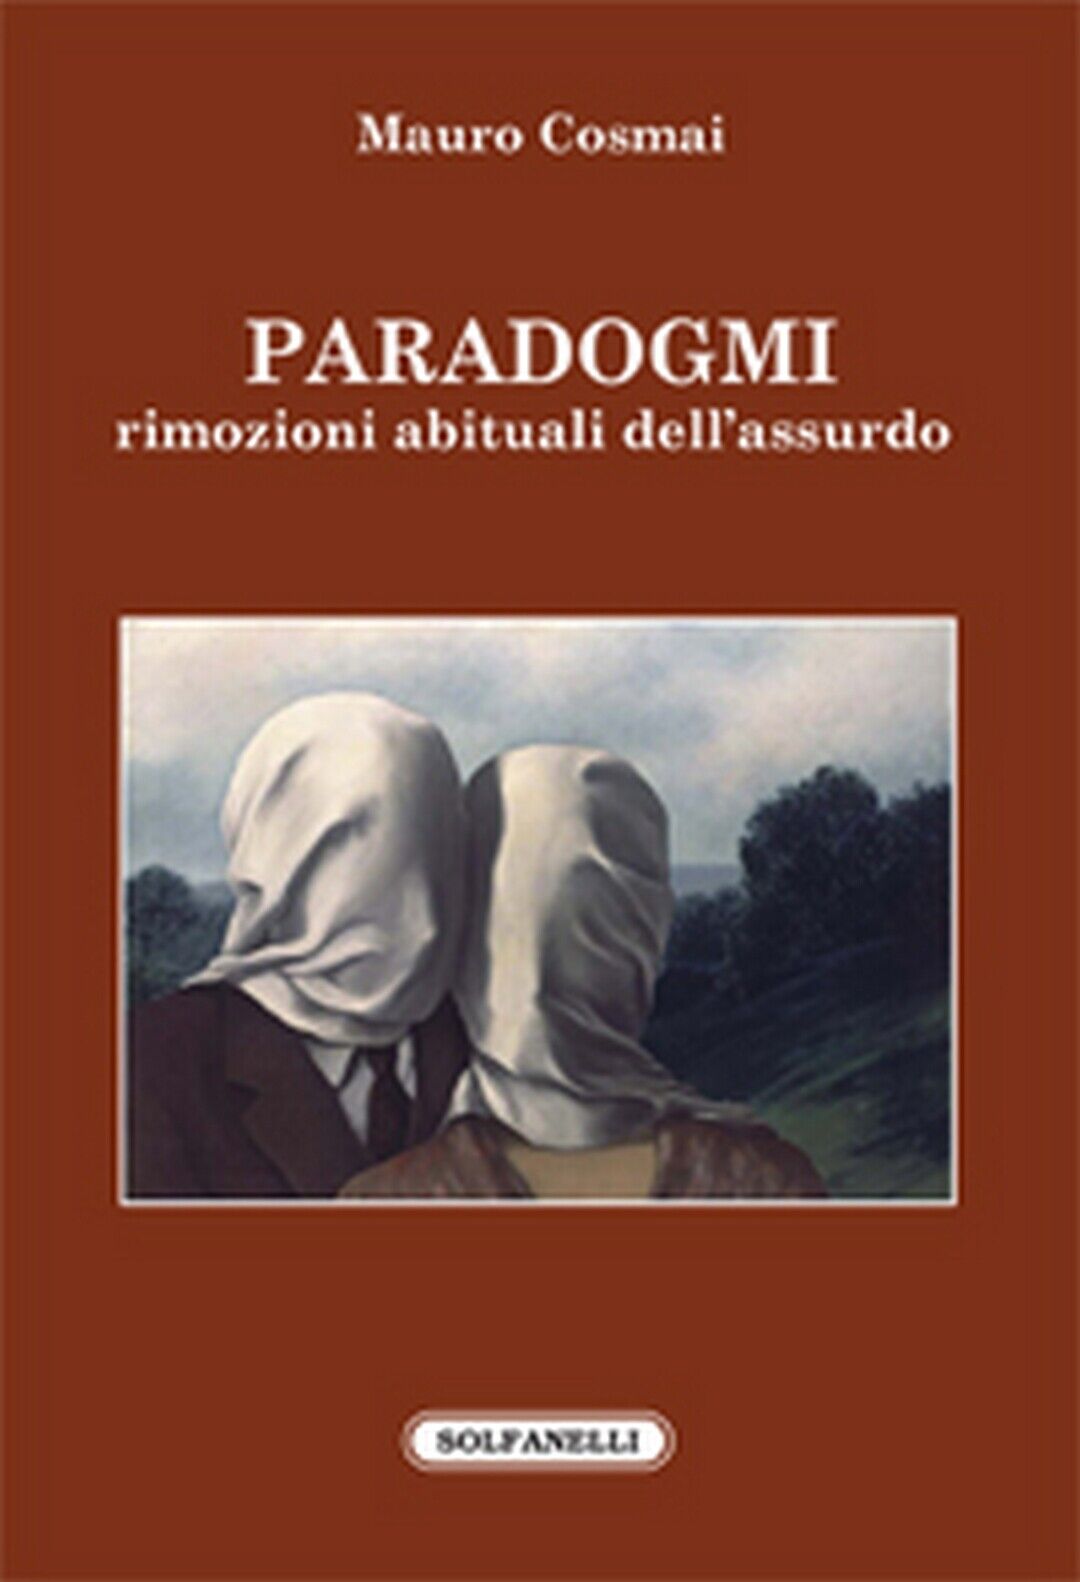 PARADOGMI. rimozioni abituali delL'assurdo, Mauro Cosmai,  Solfanelli Edizioni